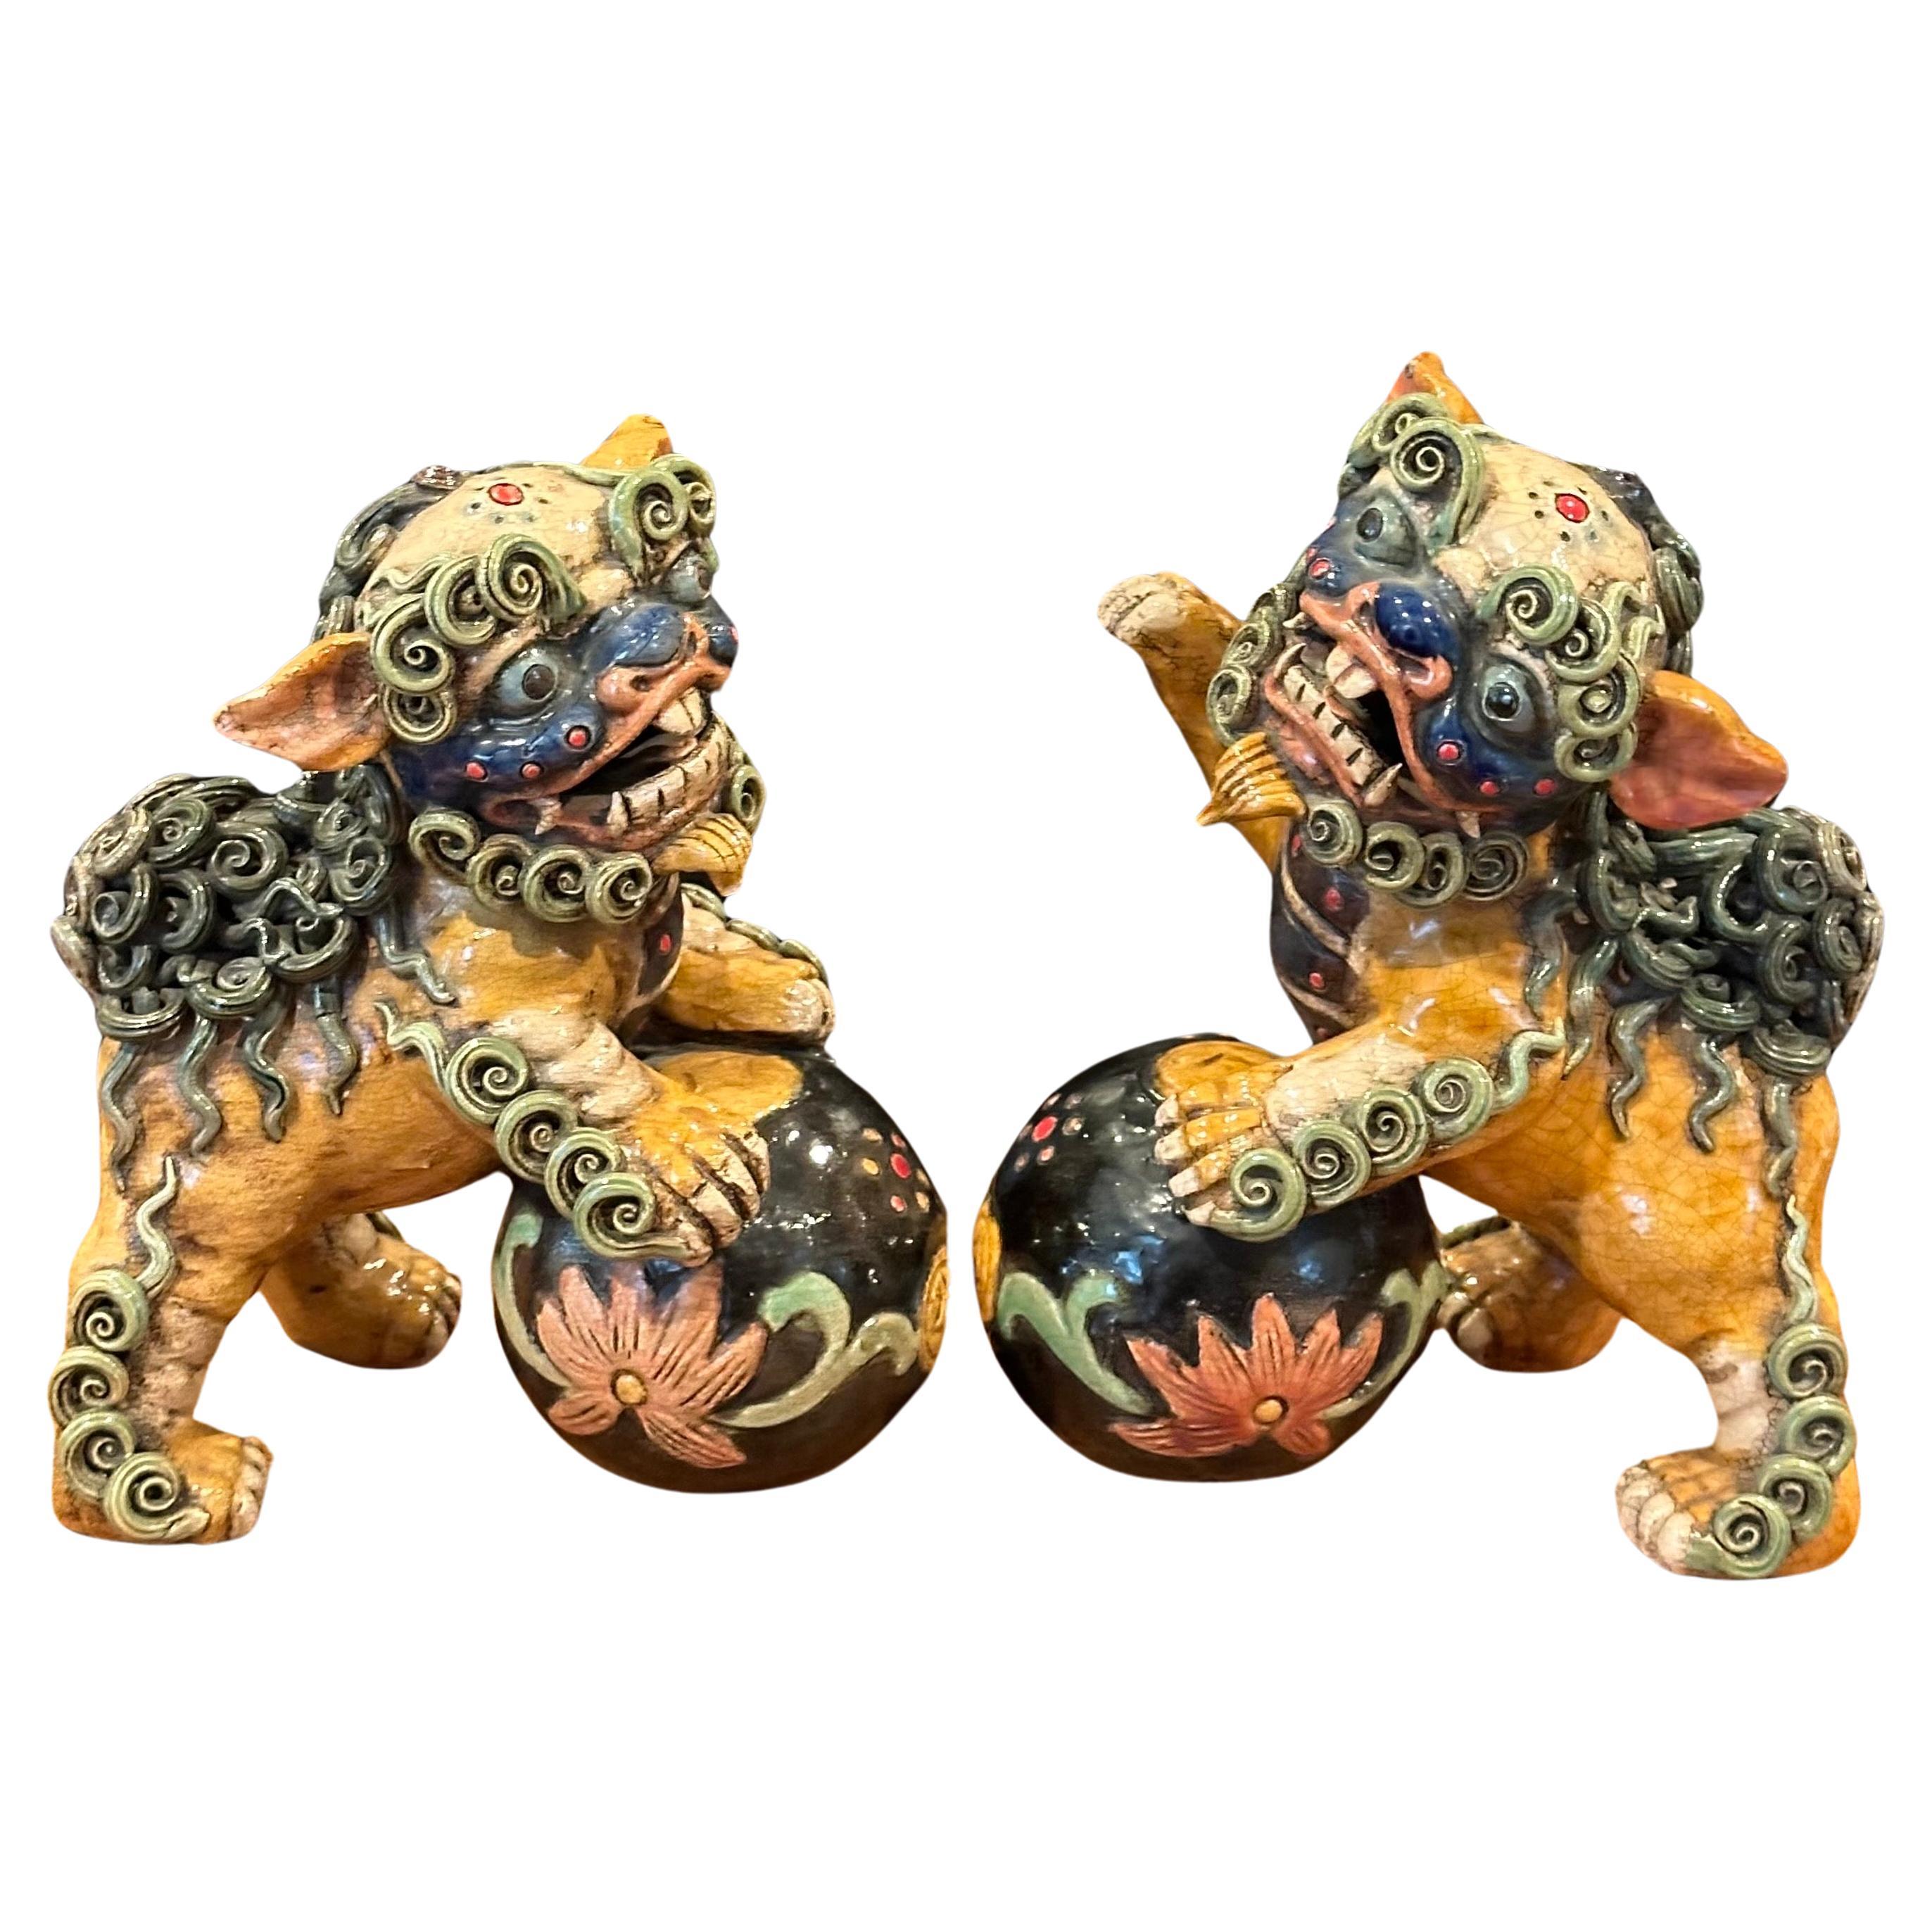 Großartiges Paar polychrom glasierter Keramikhunde aus der Mitte des Jahrhunderts aus China, ca. 1950er Jahre. Tolle Details und eine schöne Farbkombination aus Gelb, Grün und Braun; das Paar misst 14 